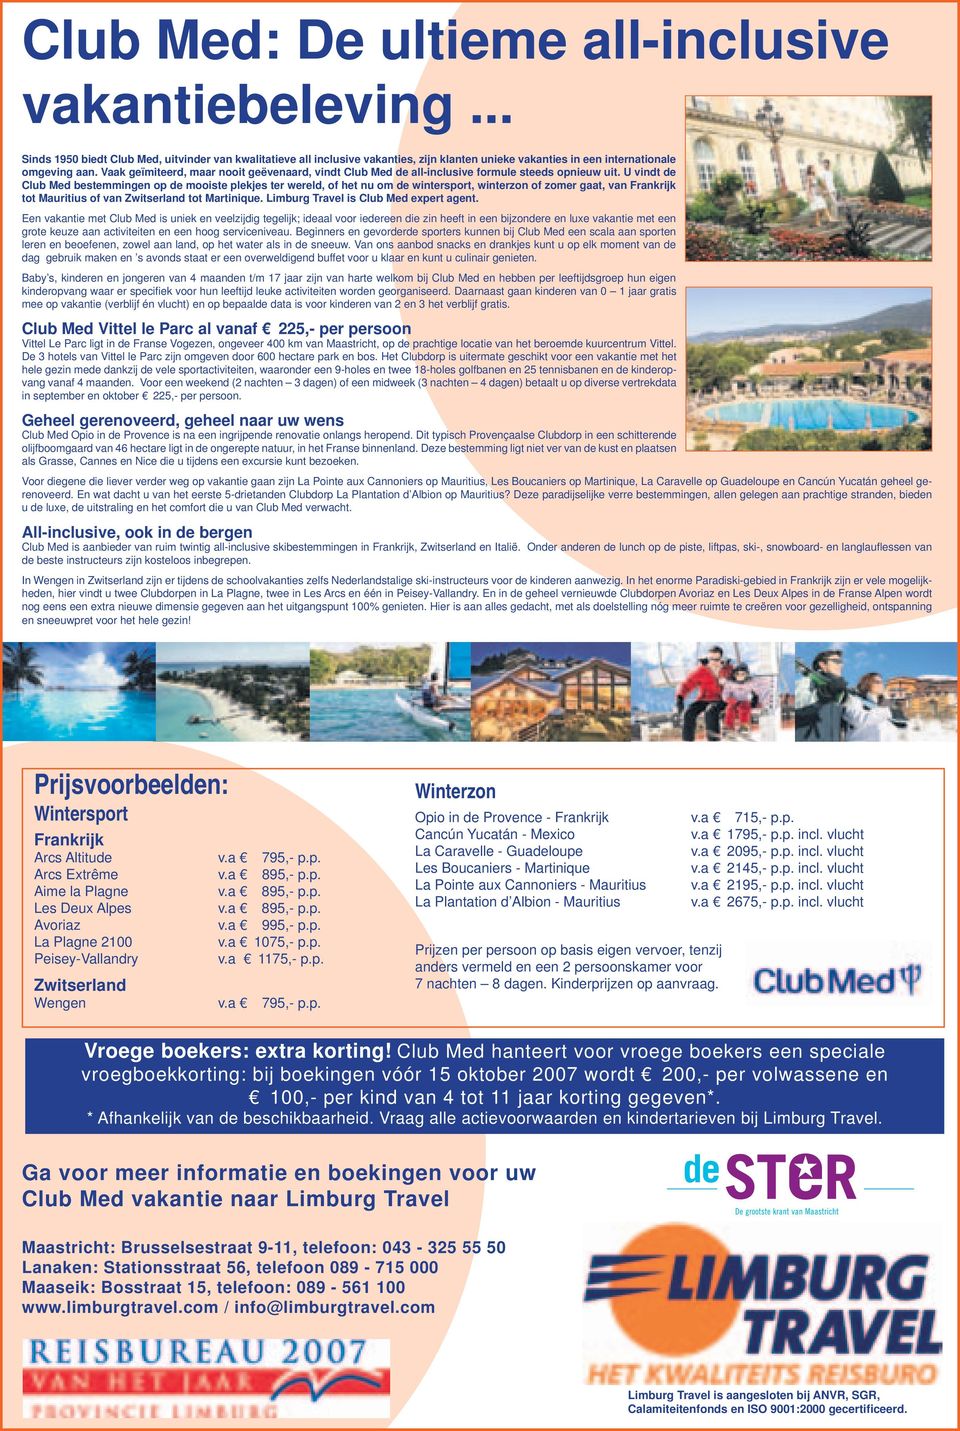 U vindt de Club Med bestemmingen op de mooiste plekjes ter wereld, of het nu om de wintersport, winterzon of zomer gaat, van Frankrijk tot Mauritius of van Zwitserland tot Martinique.